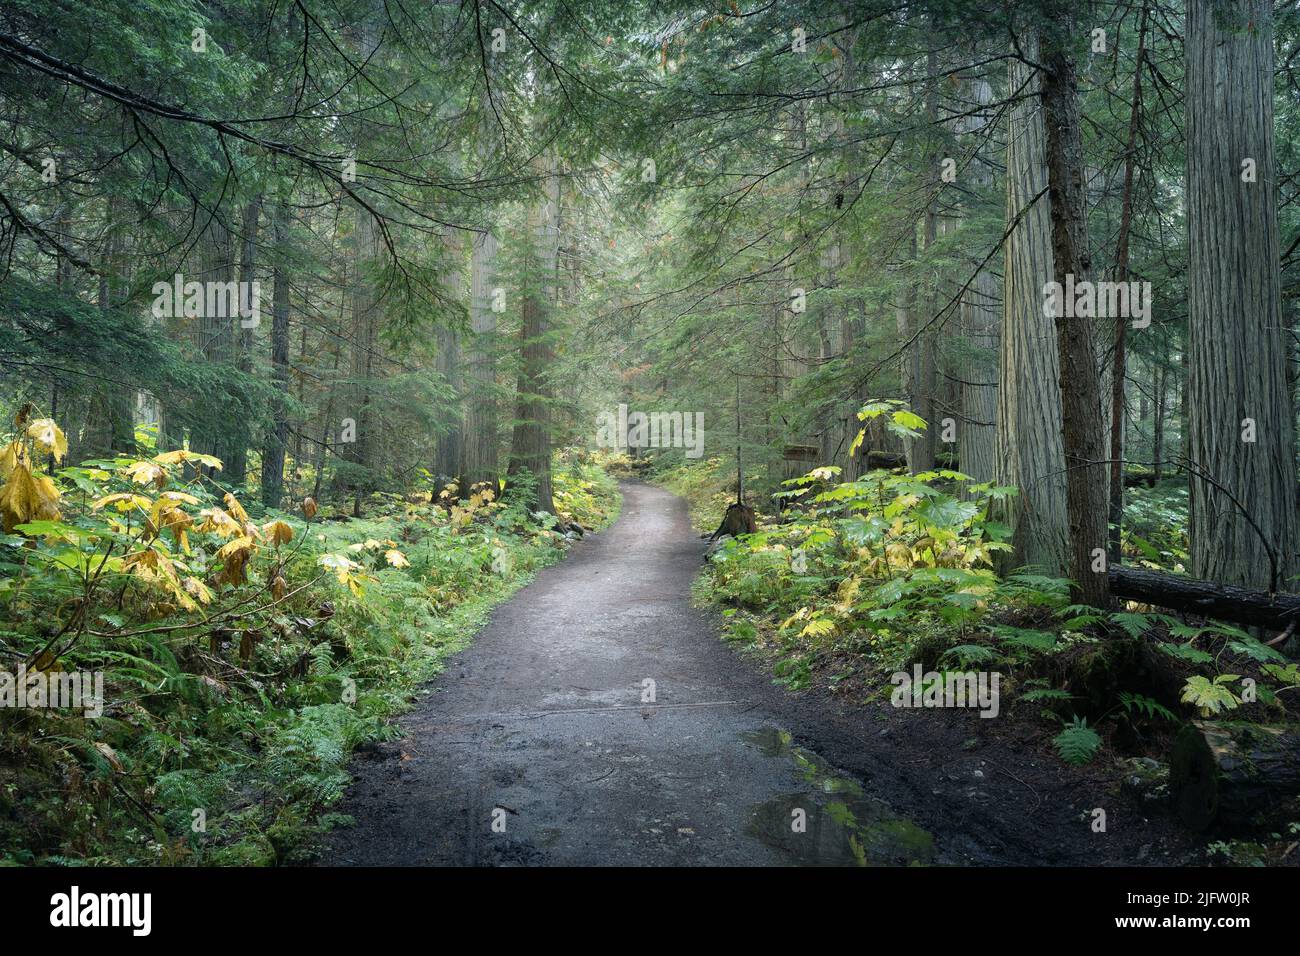 Sentier centré menant à travers la forêt tropicale verte et humide, Mount Robson PP, Canada Banque D'Images